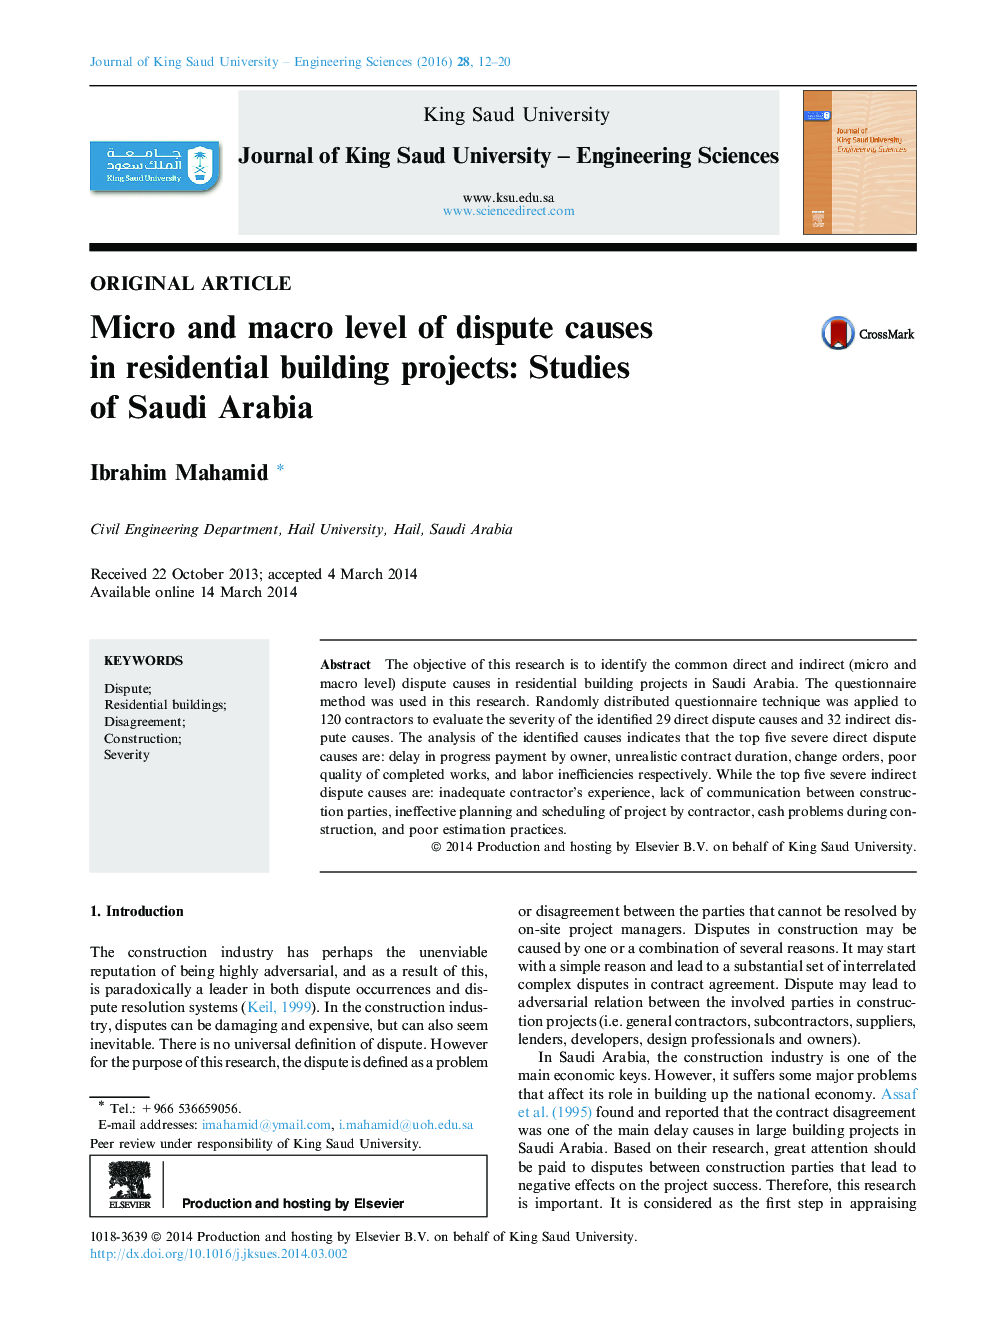 سطح میکرو و کلان منجر به اختلاف در پروژه های ساختمانی مسکونی: مطالعات عربستان سعودی 